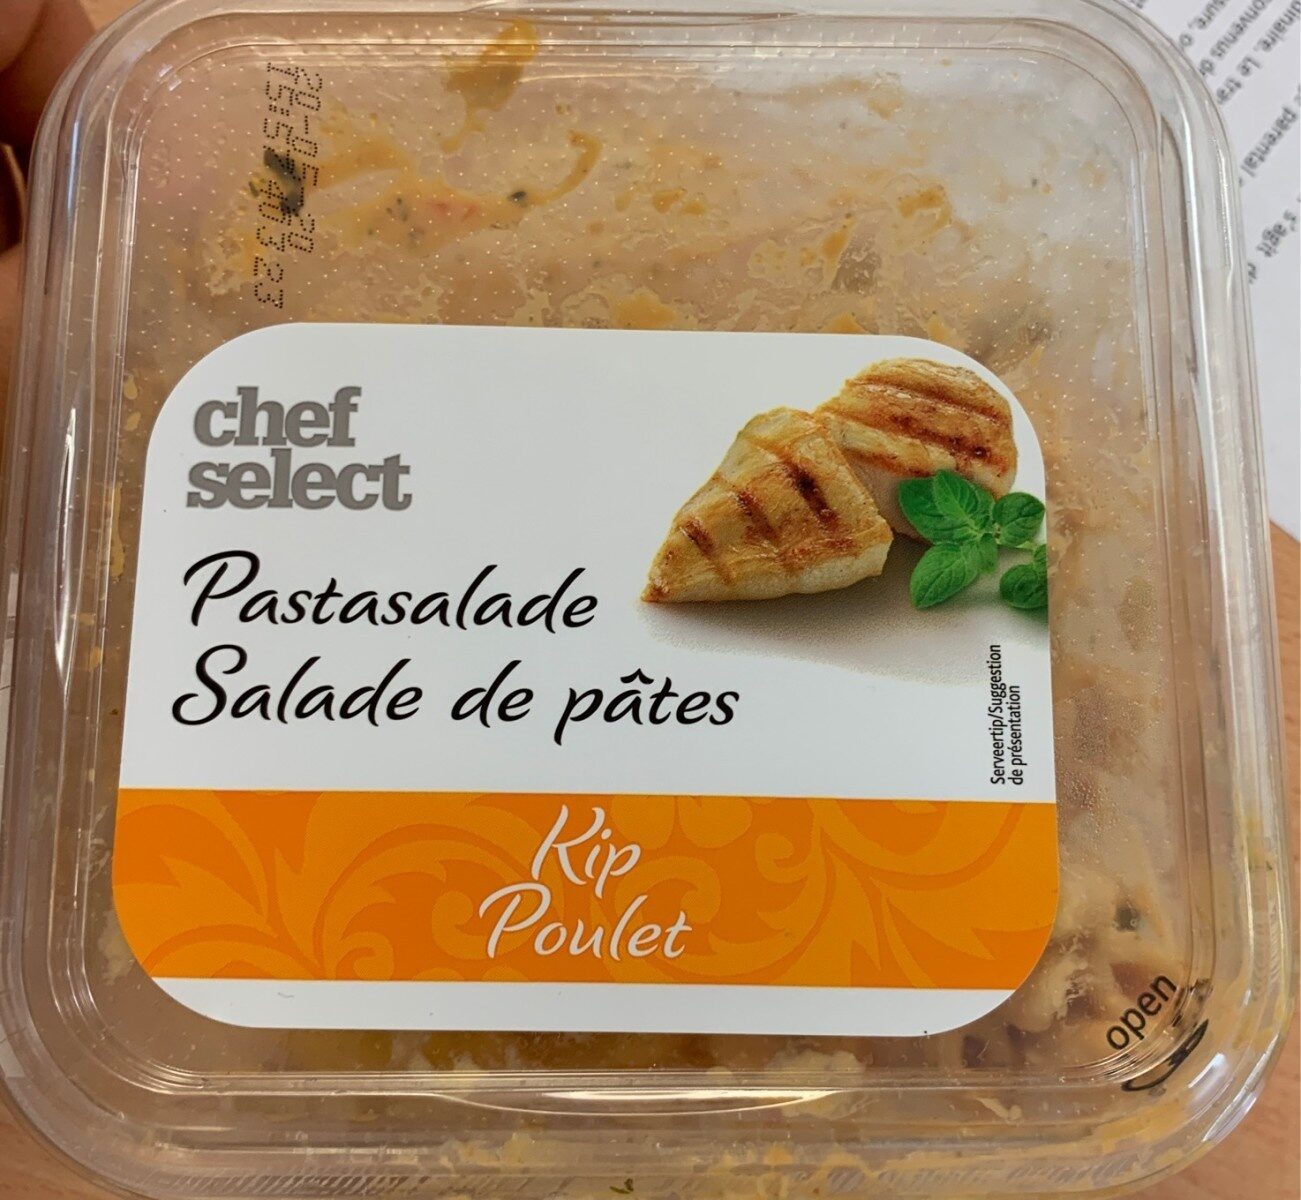 Salade de pates poulet - Product - fr